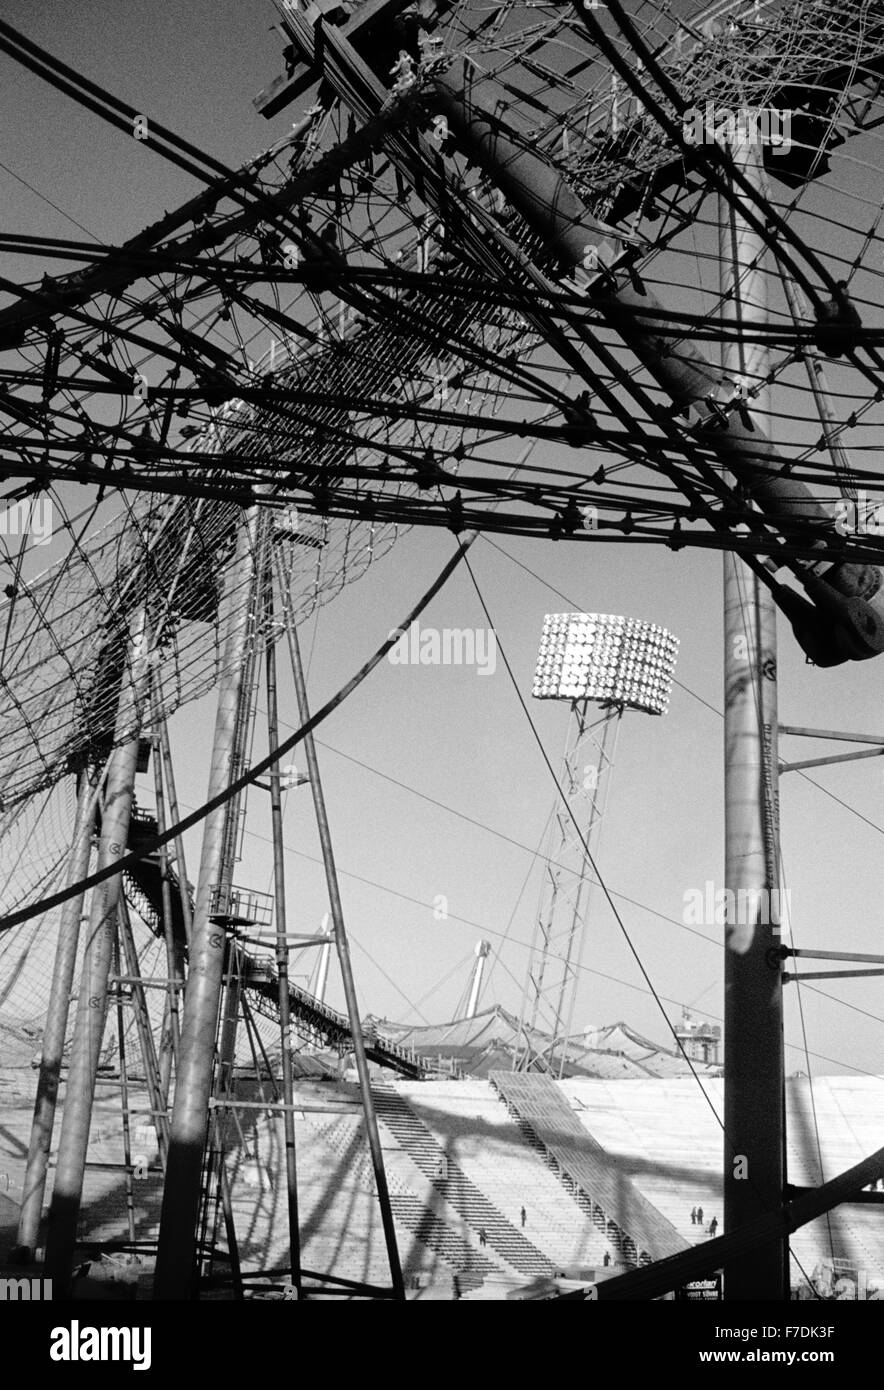 Il Parco Olimpico di Monaco di Baviera, sede dei Giochi Olimpici 1972, in fase di costruzione. Das Münchner Olympiastadion während der Bauzeit, 1971 Foto Stock